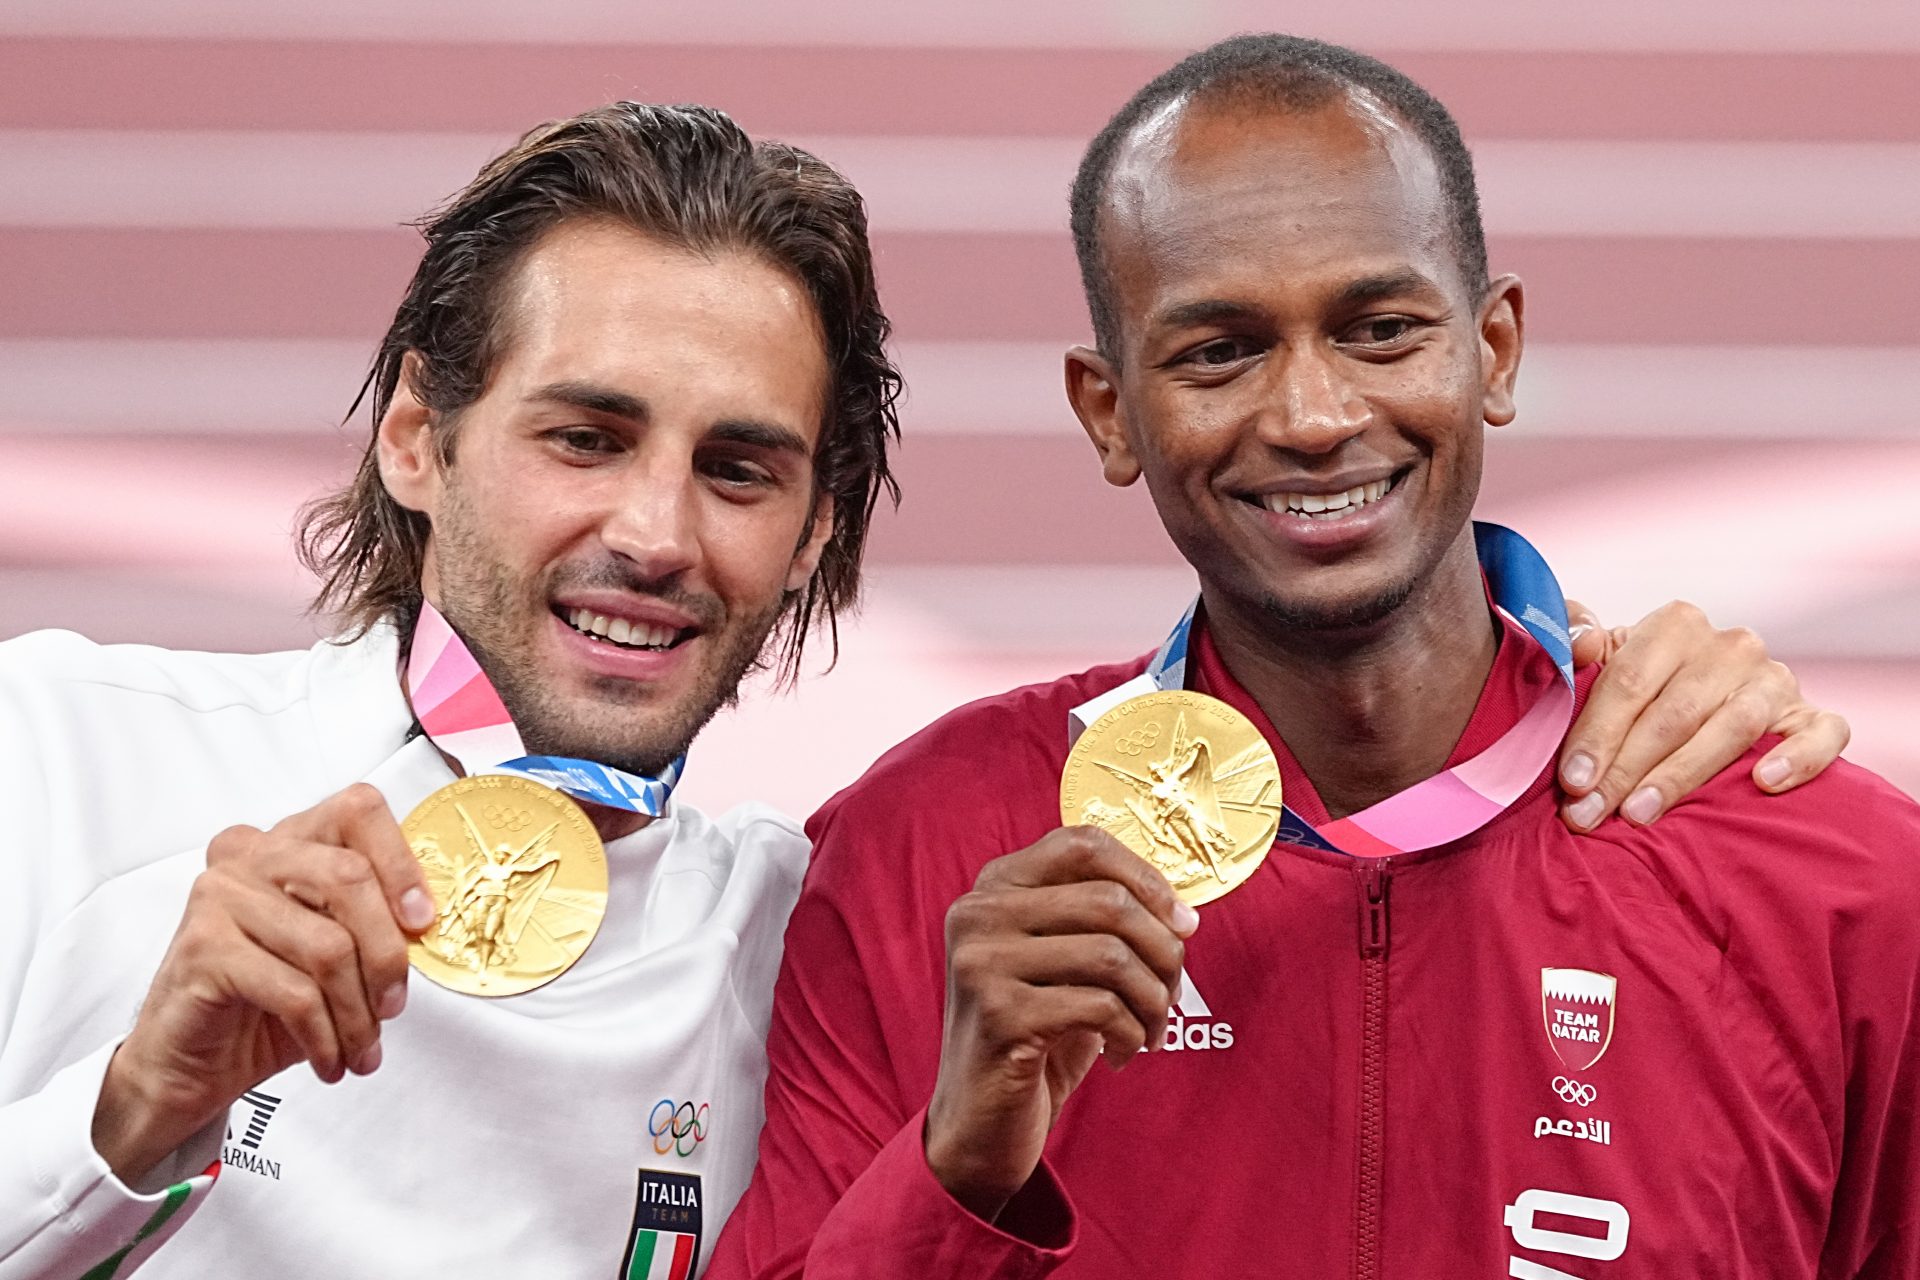 Il giorno in cui Tamberi e Barshim condivisero la medaglia d'oro olimpica